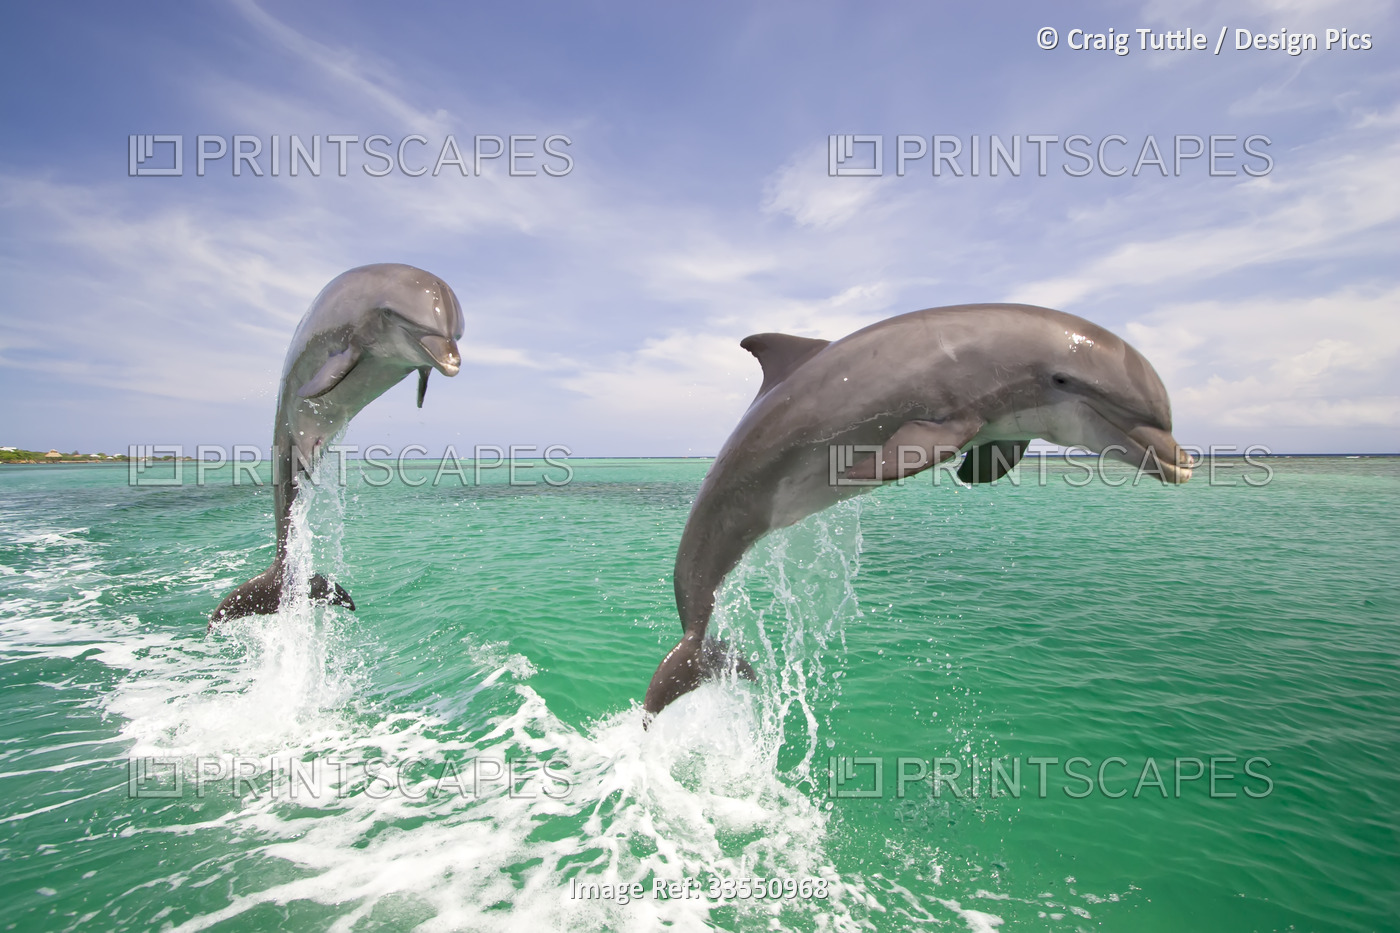 Dolphins breaching from the Caribbean Sea; Roatan, Honduras